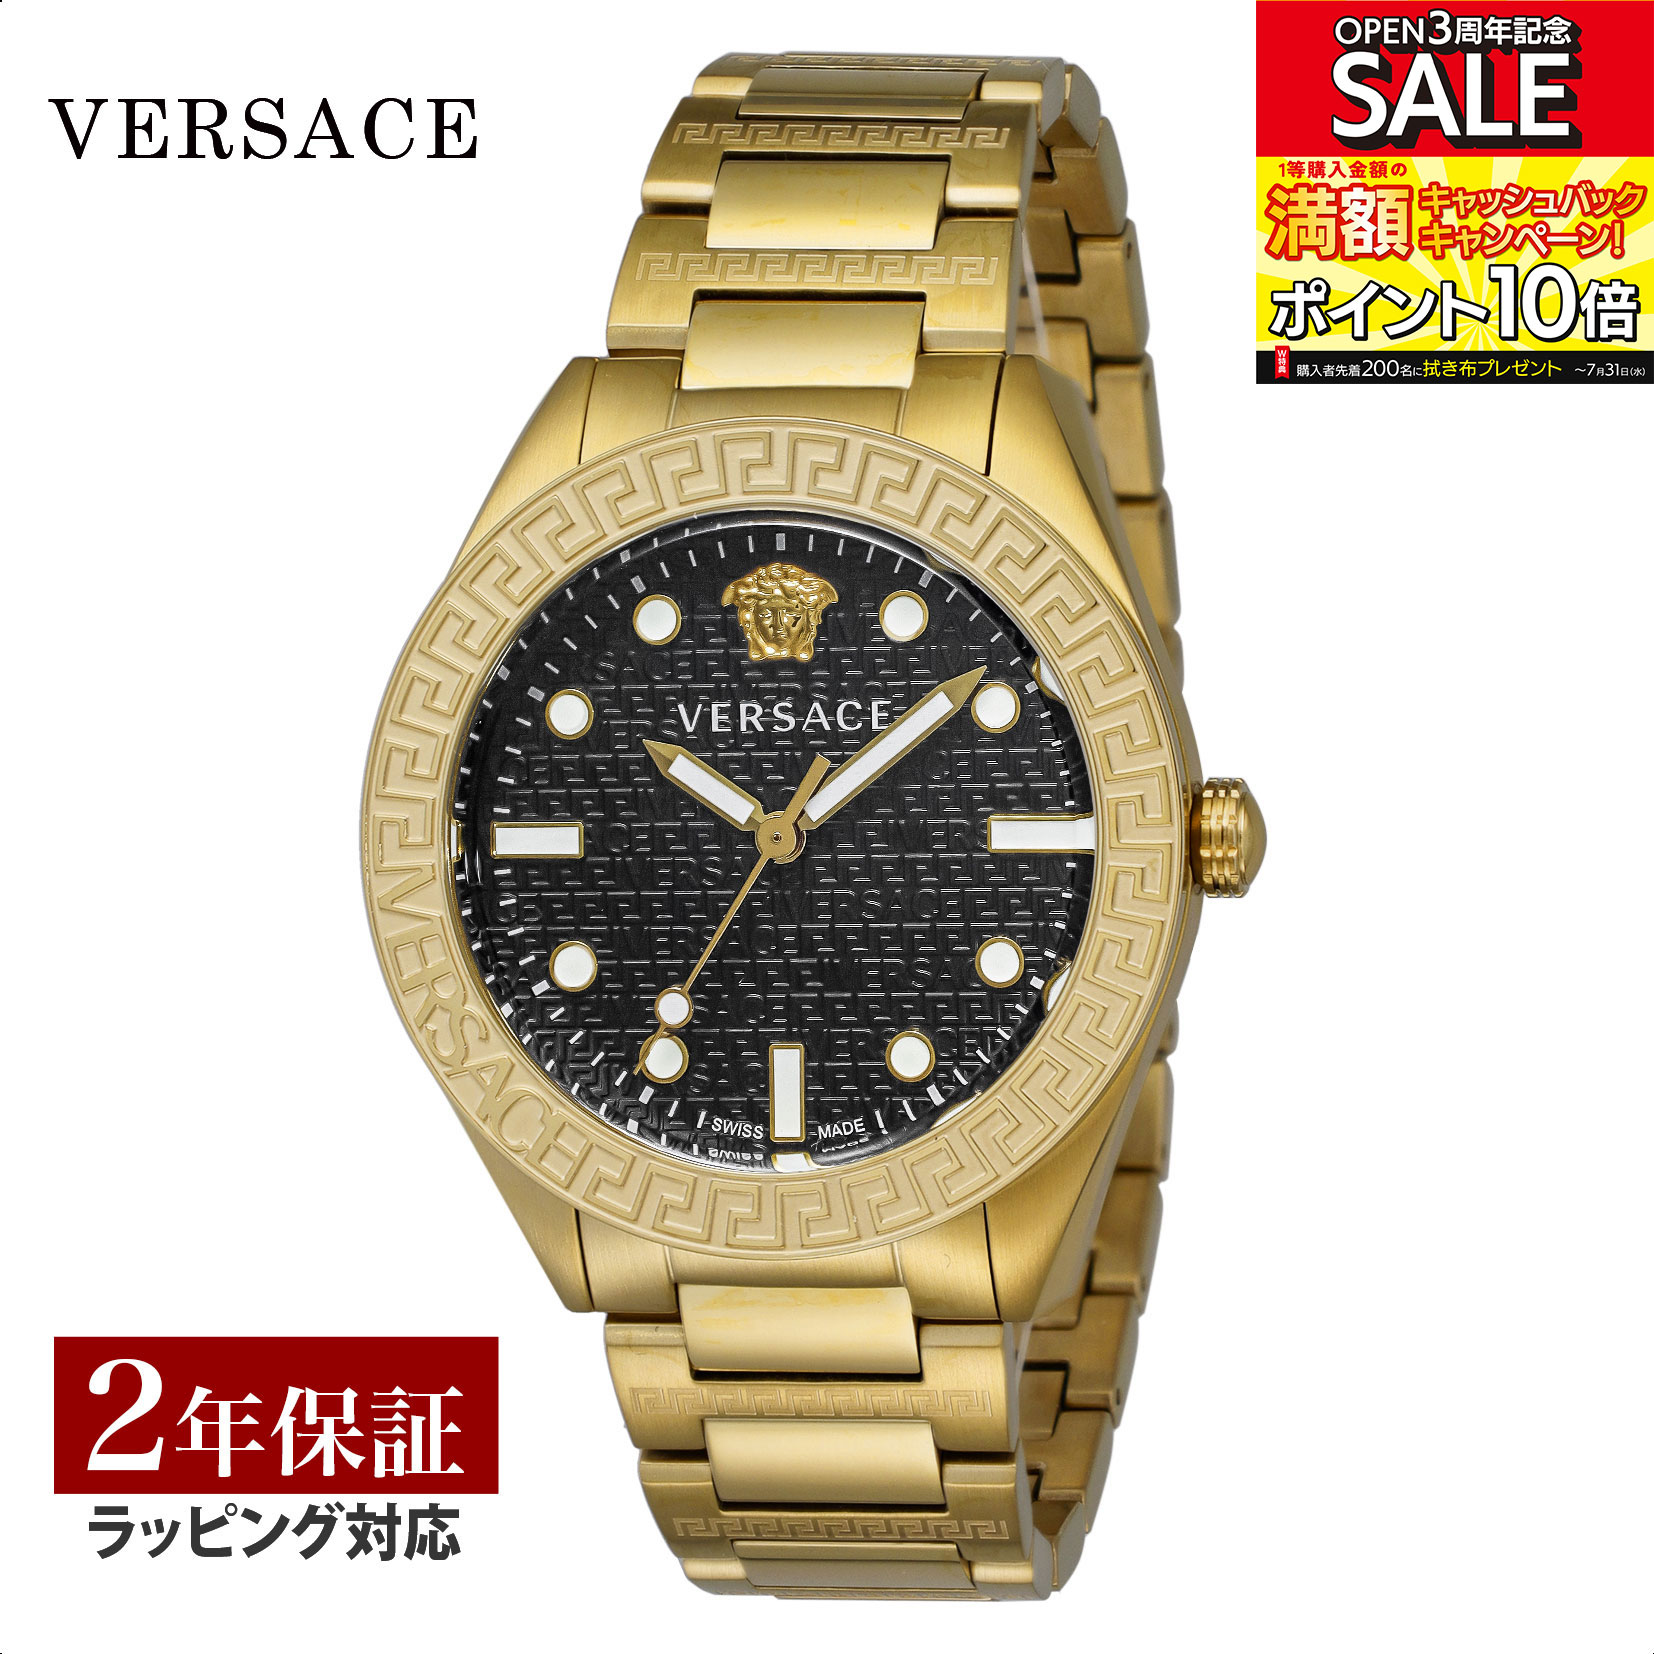 ヴェルサーチェ 腕時計（メンズ） ヴェルサーチェ VERSACE メンズ 時計 グレカドーム Greca Dome クォーツ ブラック VE2T00522 腕時計 高級腕時計 ブランド